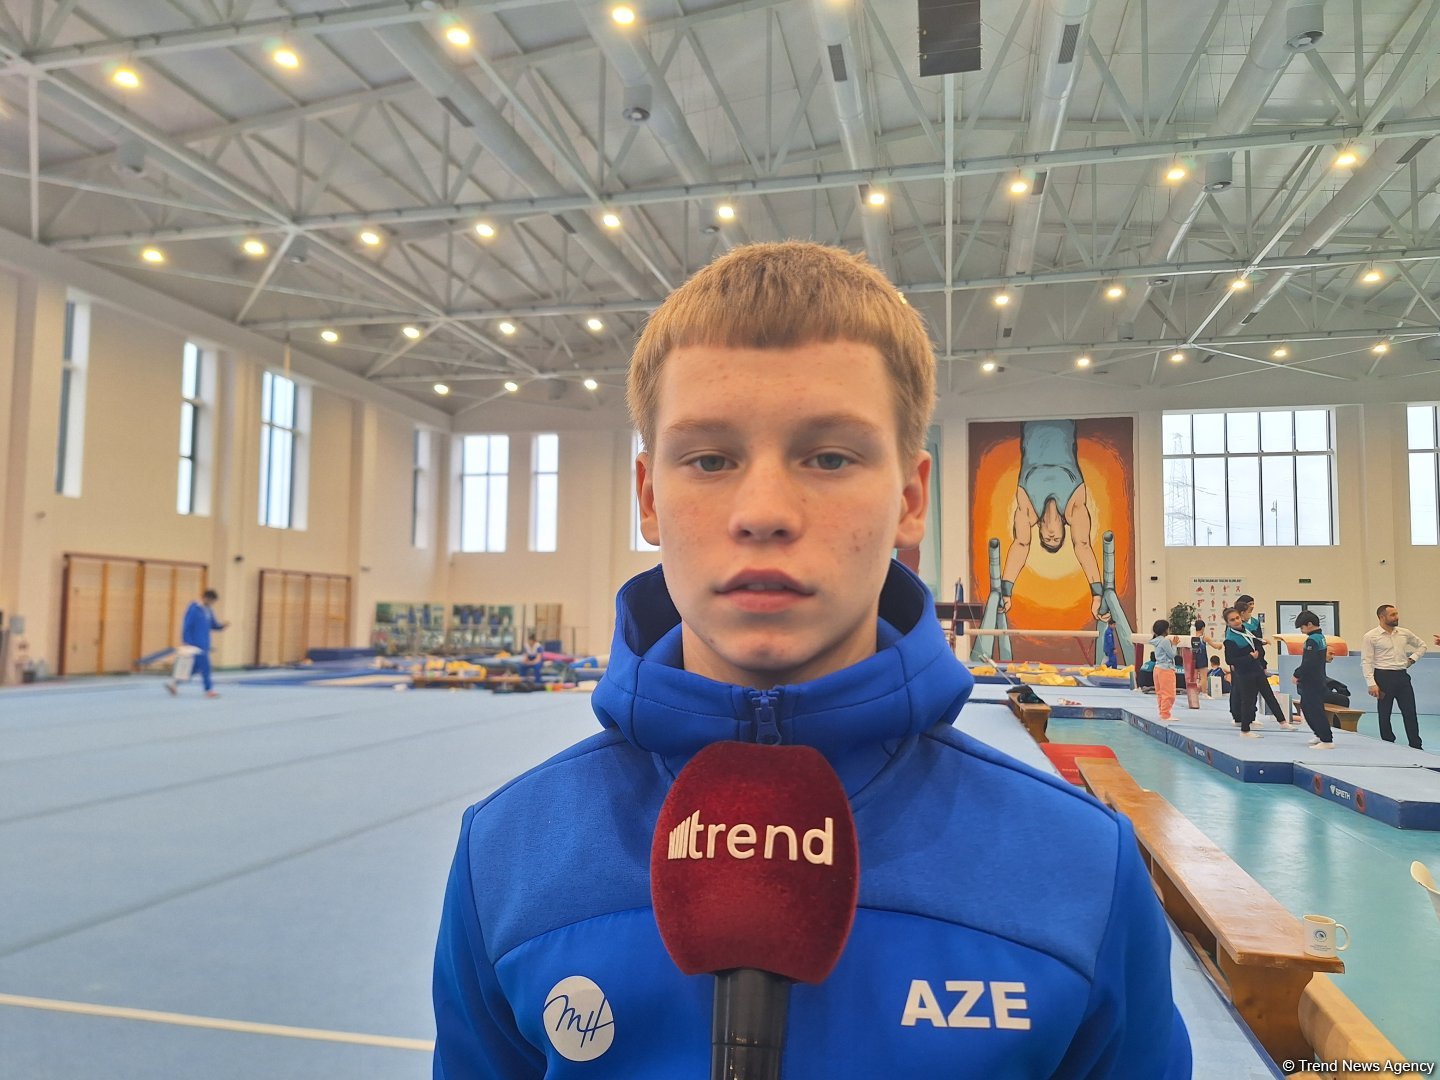 Интенсивно готовлюсь к ЧЕ в Португалии – юный азербайджанский гимнаст